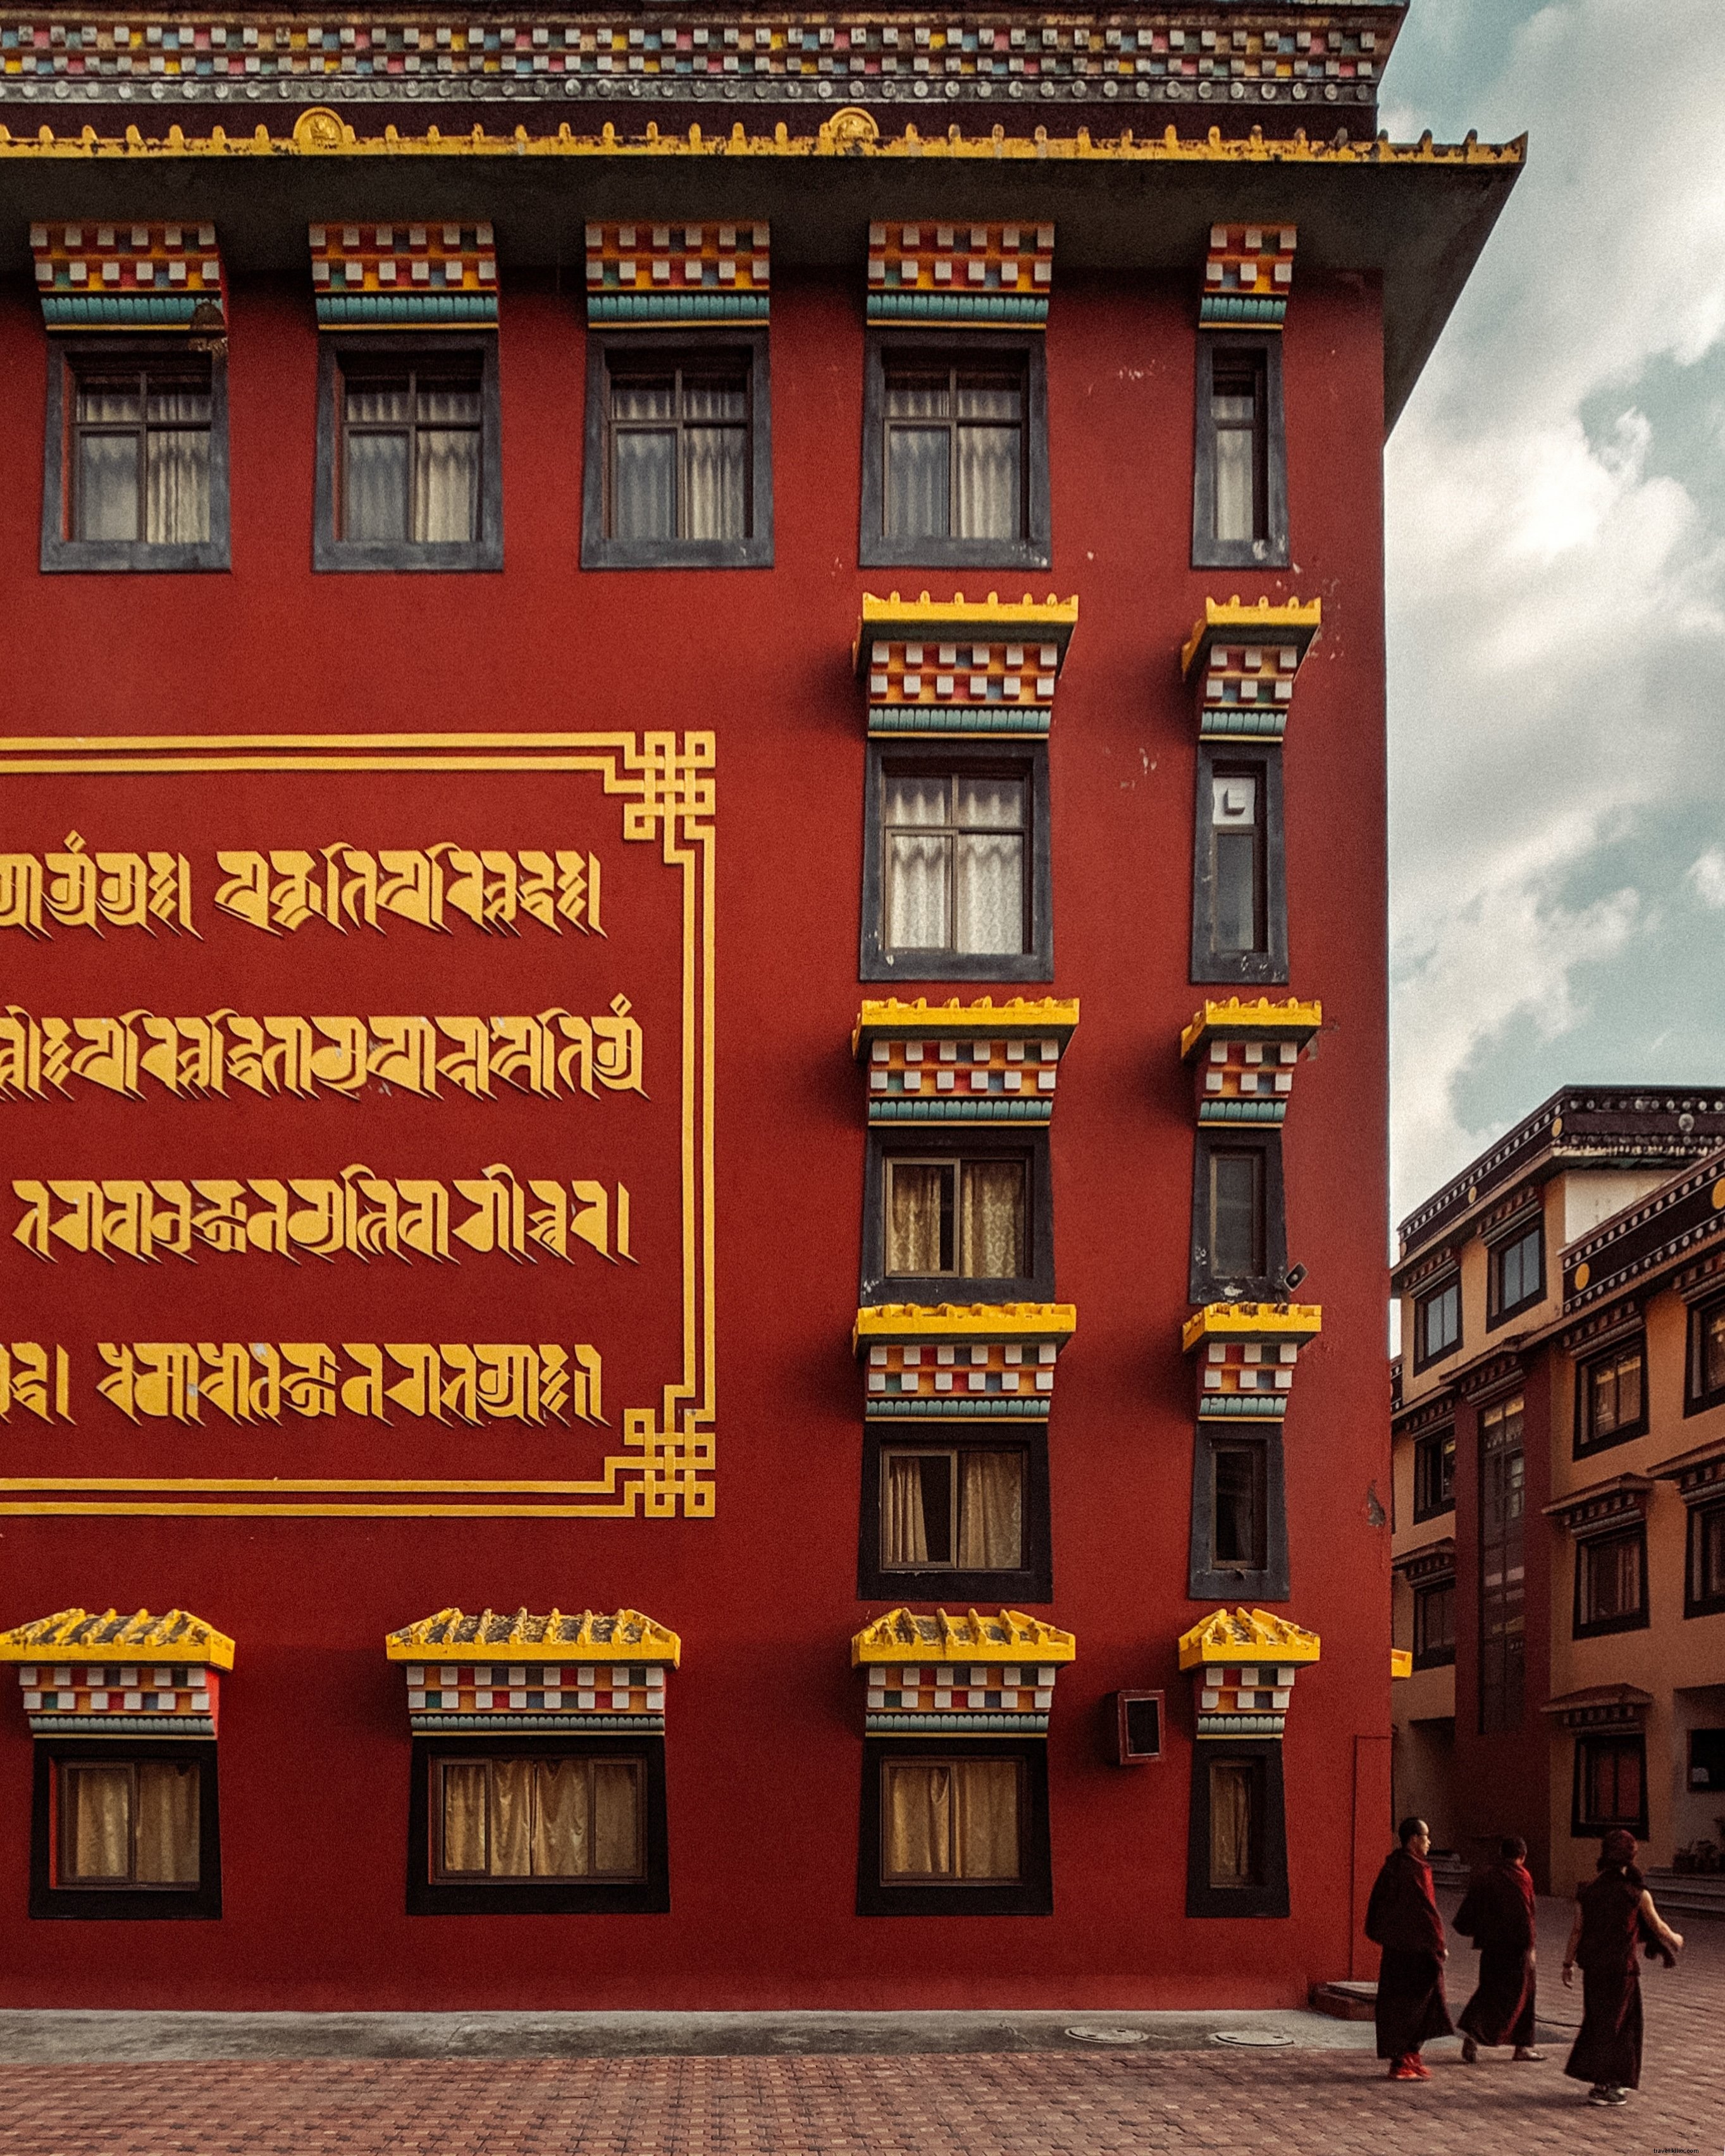 Bangunan Merah Tua Dengan Tulisan Emas Di Dinding Foto